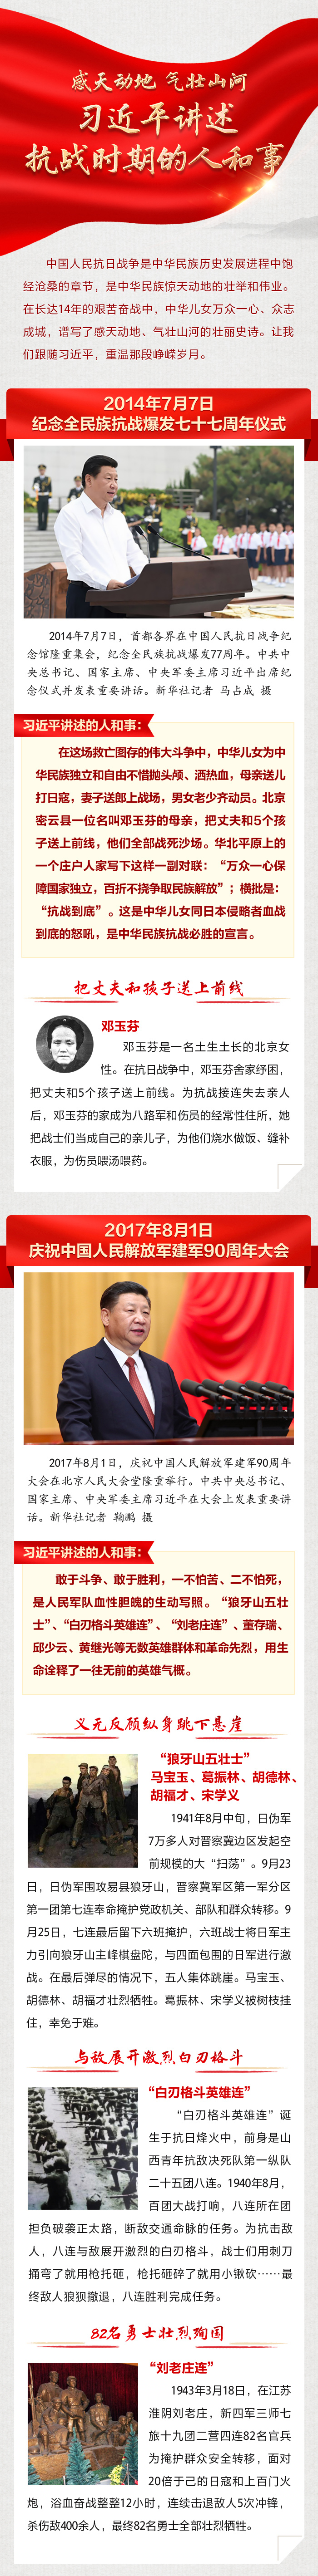 习近平讲述抗战时期的人和事 人民网-中国共产党新闻网.jpg